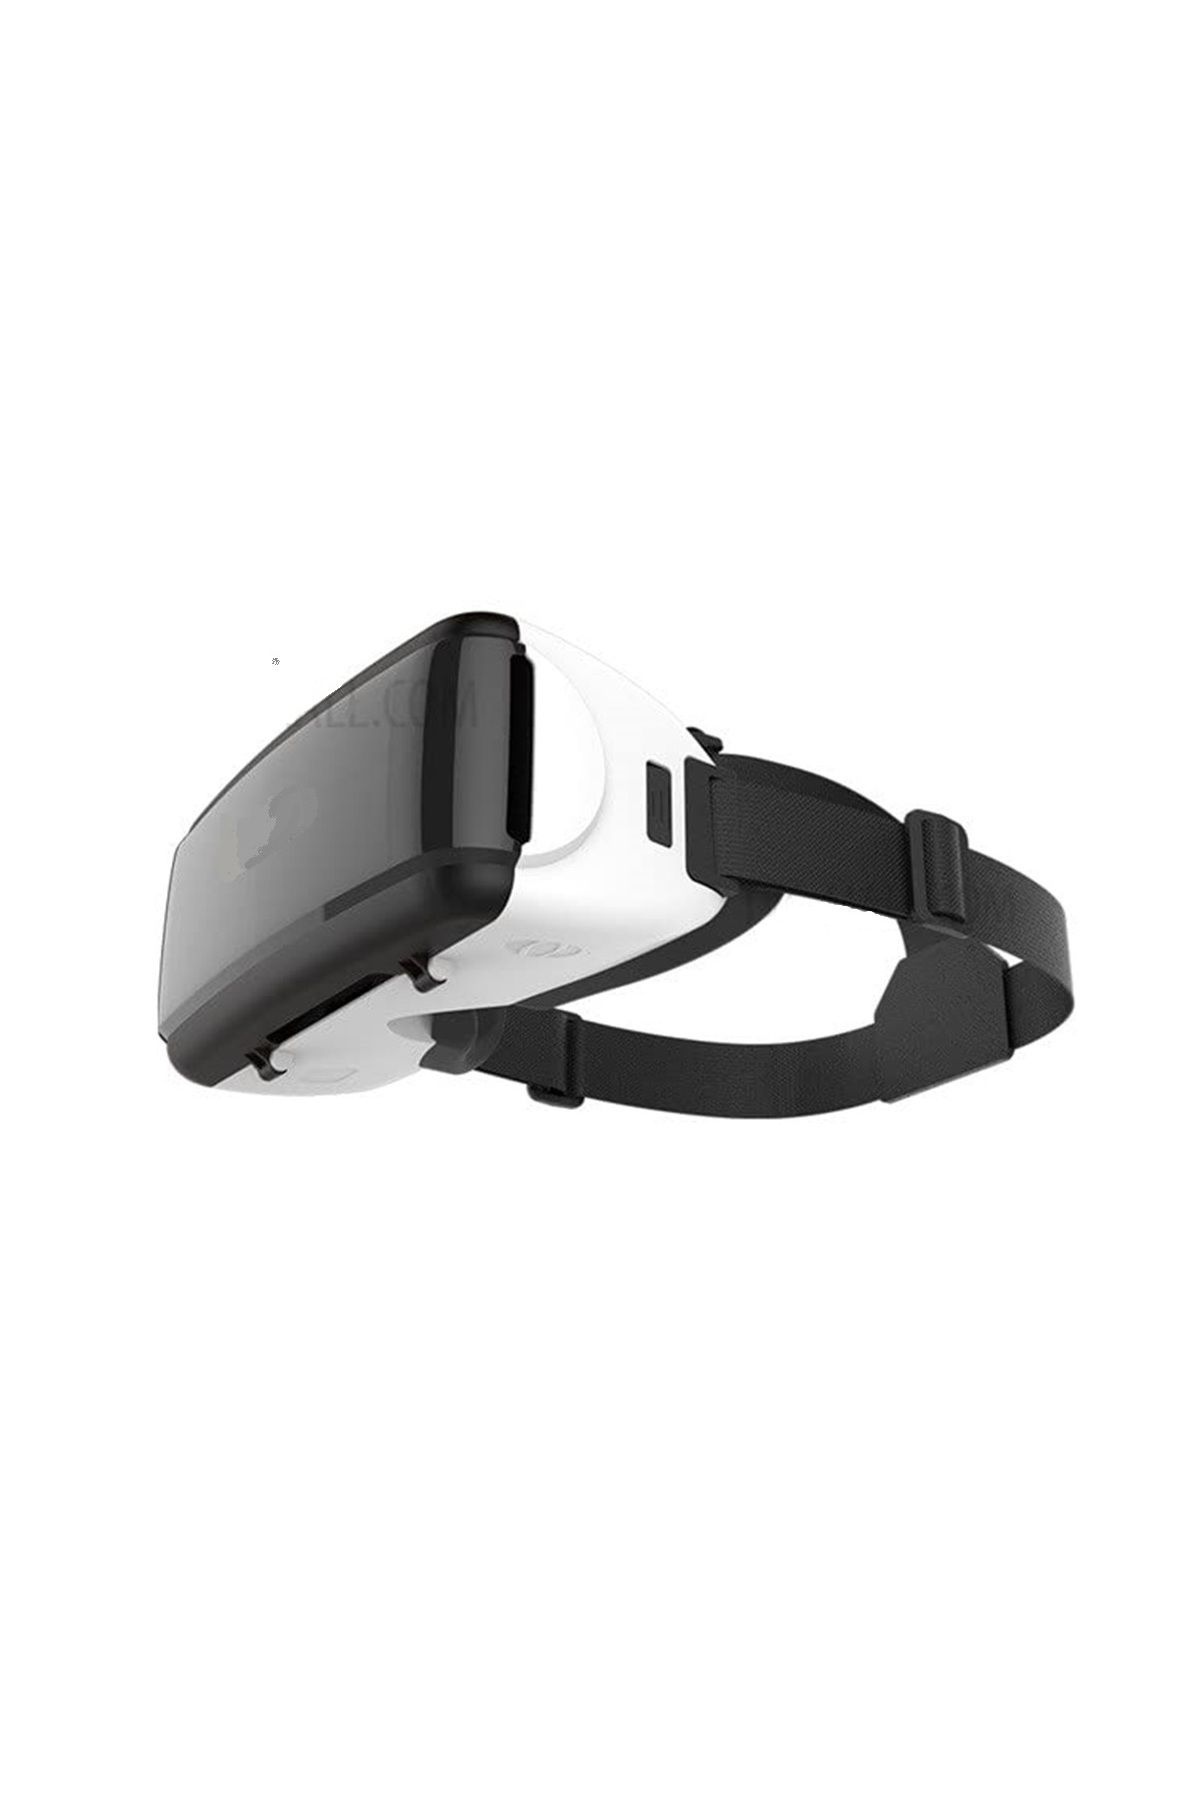 LEN10 Sanal Gerçeklik Gözlüğü 3d Vr Reçine Lens Gözlük Video Oyun Ve Filmler Tüm Telefonlara Uyumlu